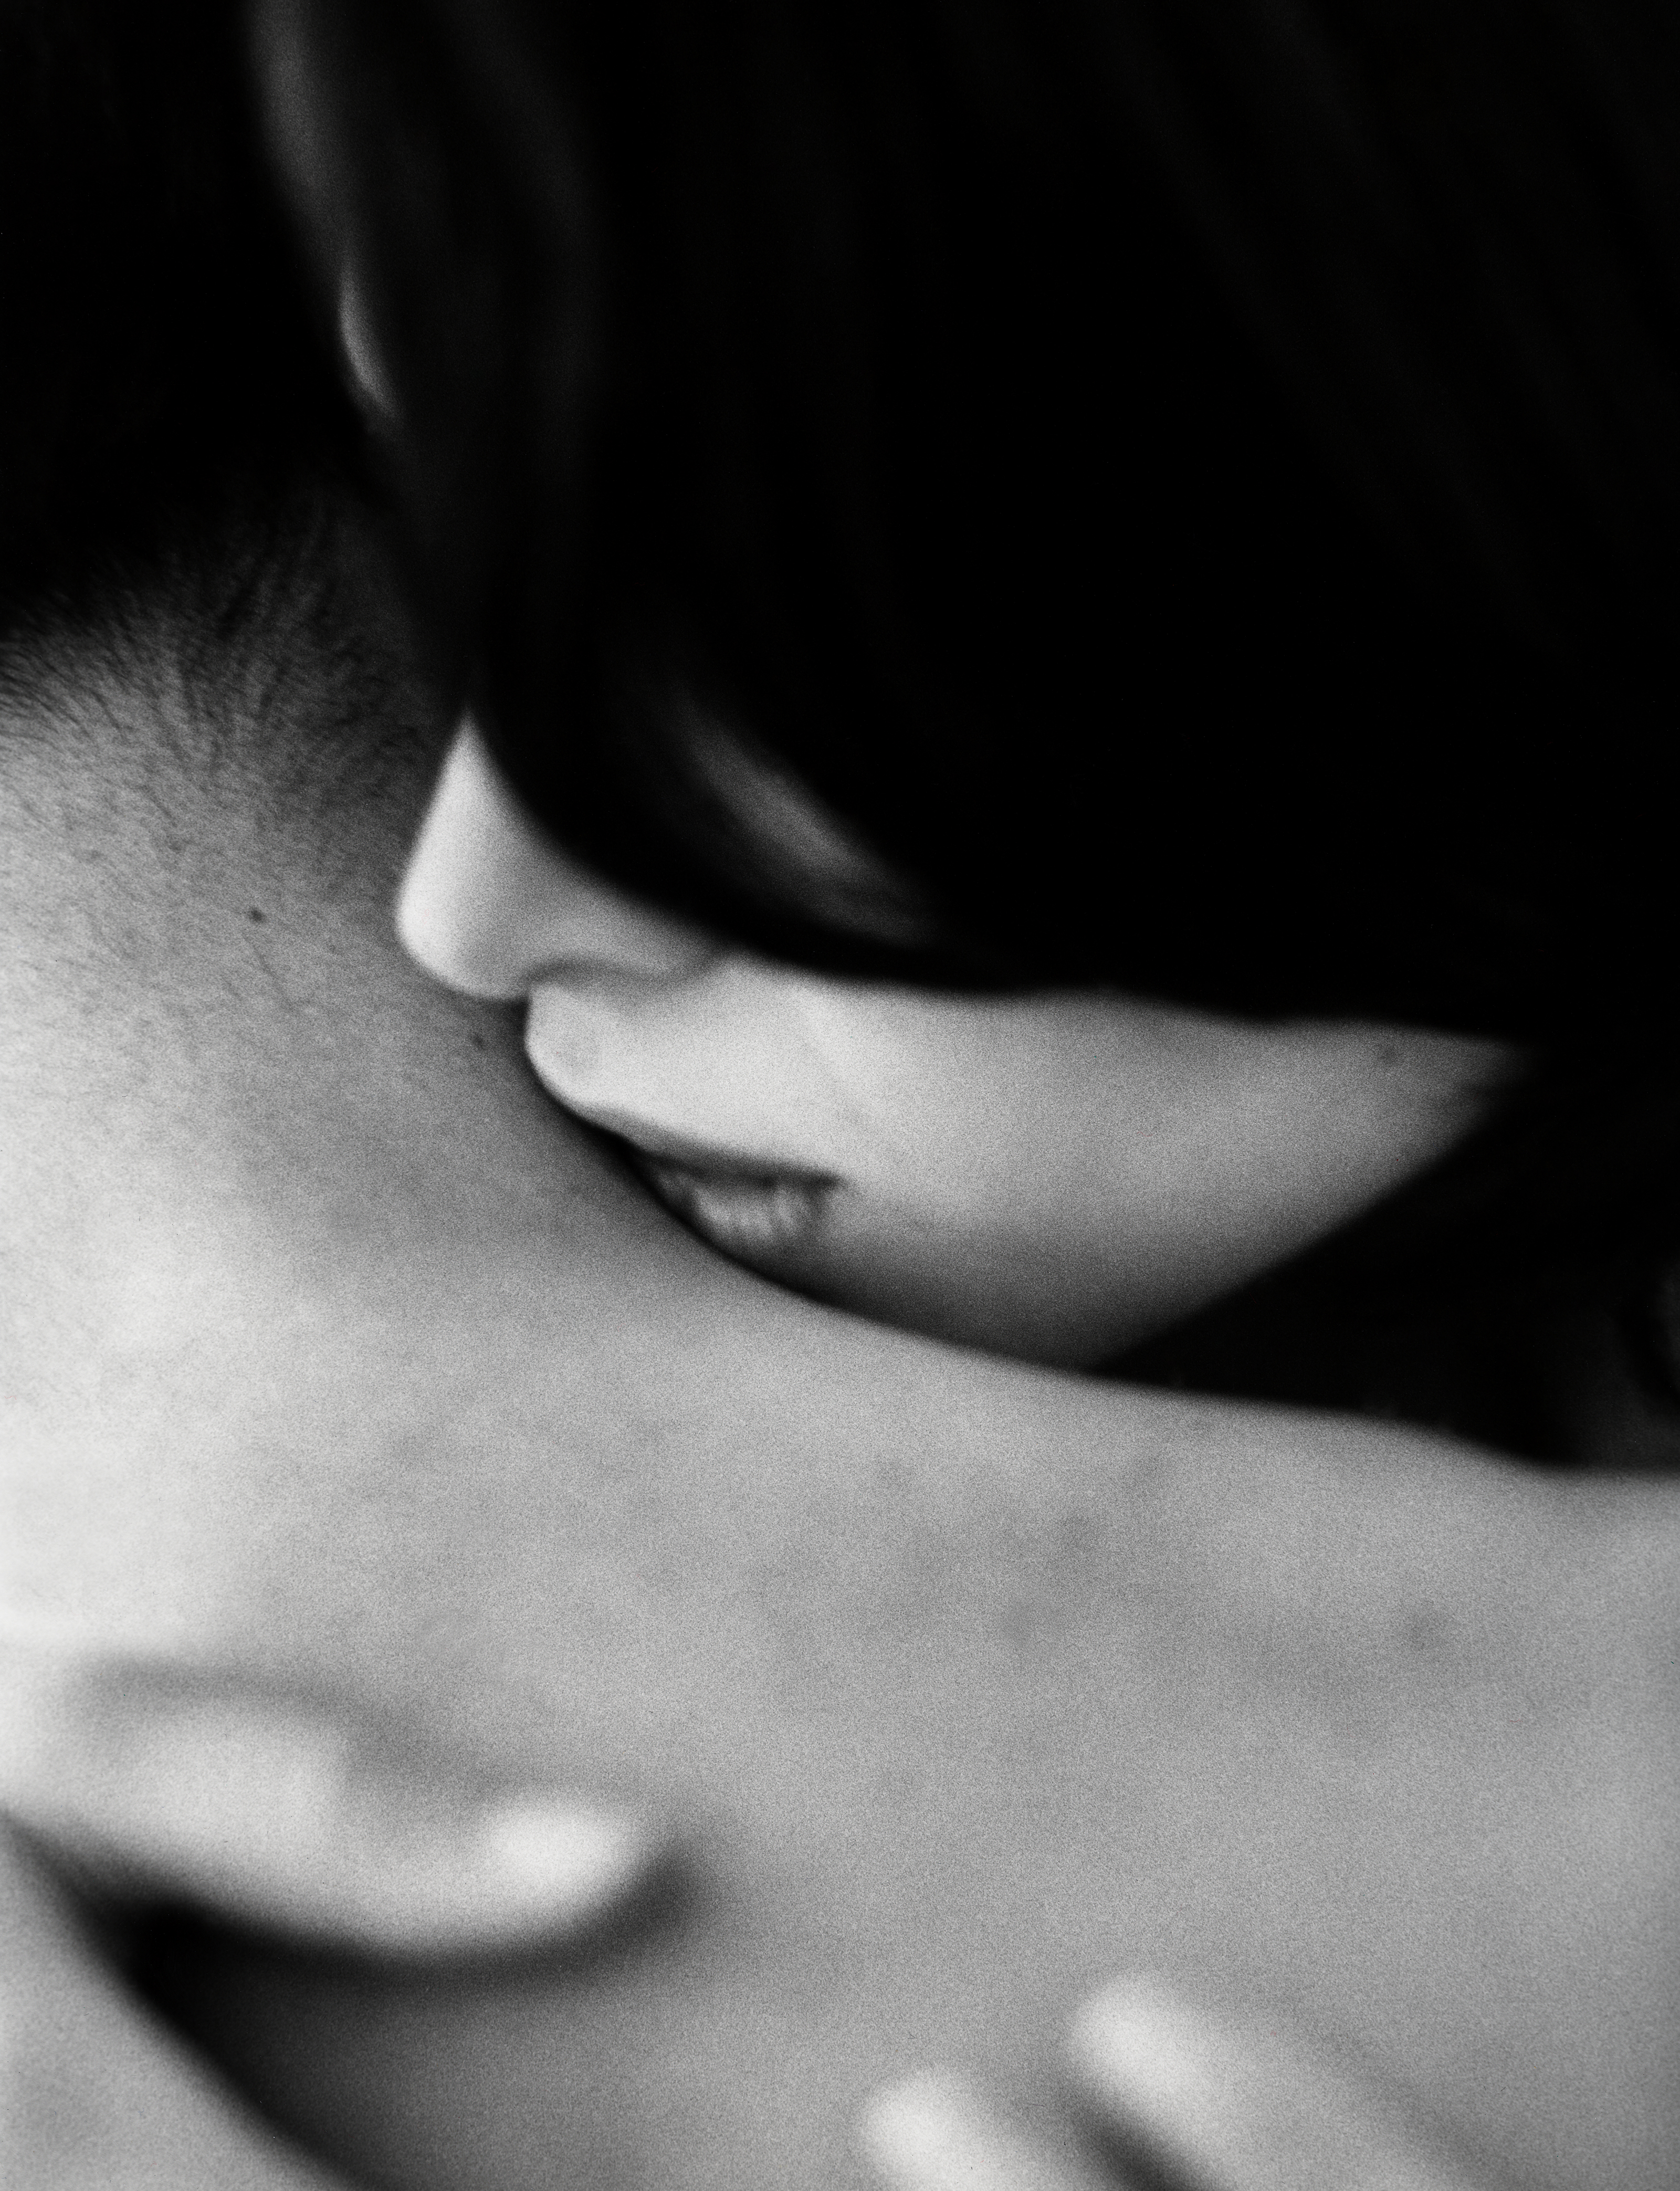 Ласкать нежное тело. Поцелуй в шею. Мужчина целует женщину в шею. Нежный поцелуй в шею. Поцелуй в шею мужчине.